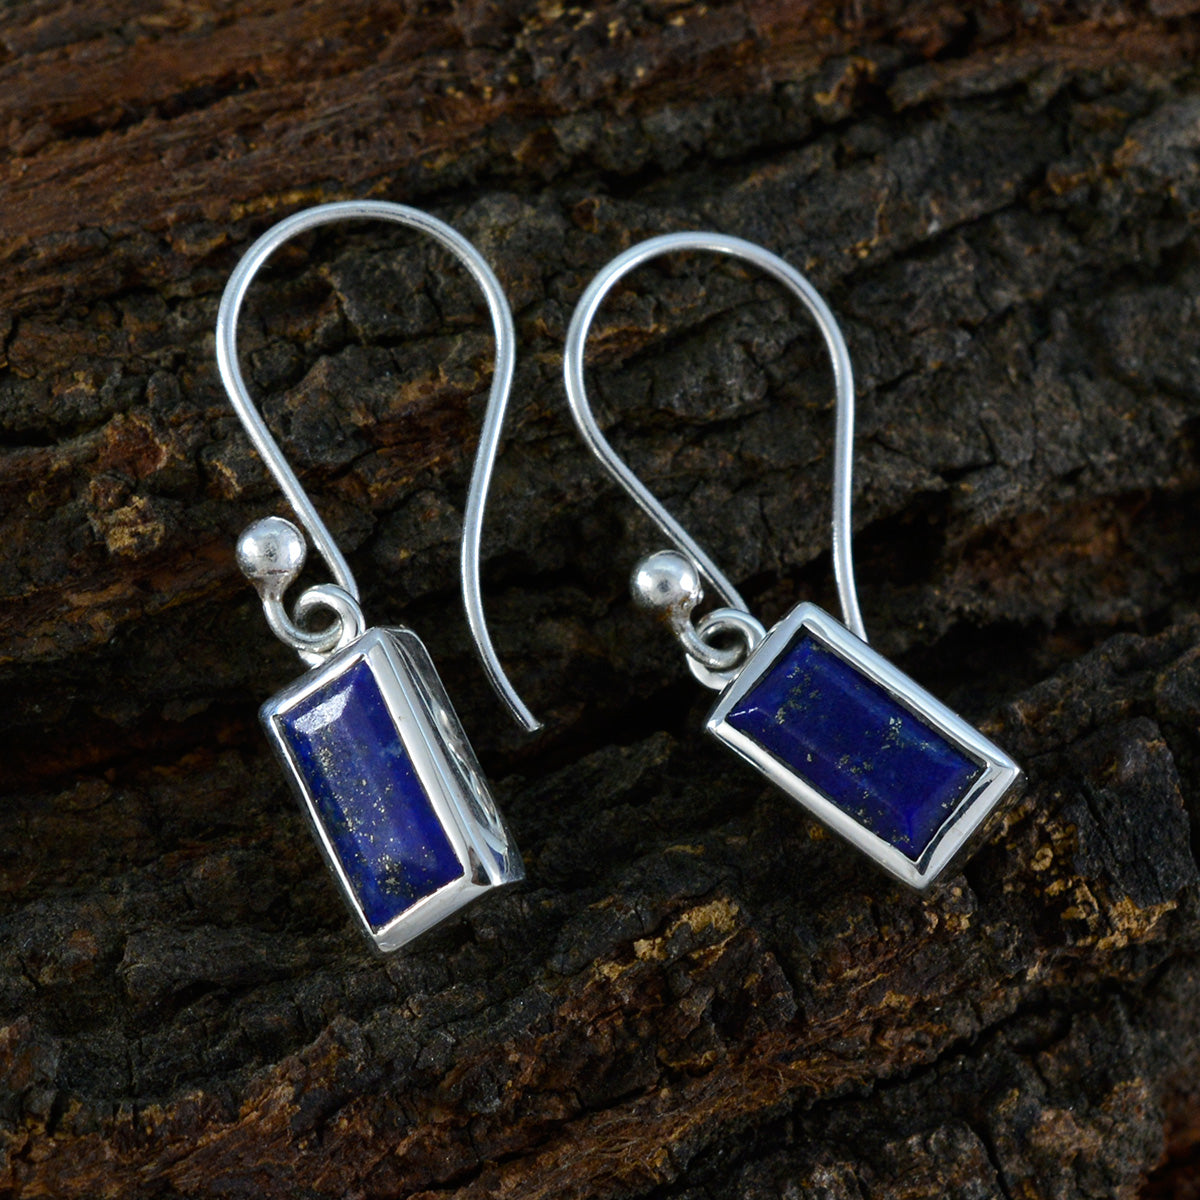 Riyo Prachtige Sterling zilveren oorbel voor vrouw Lapis Lazuli Oorbel Bezel Setting Blauwe oorbel Dangle Earring